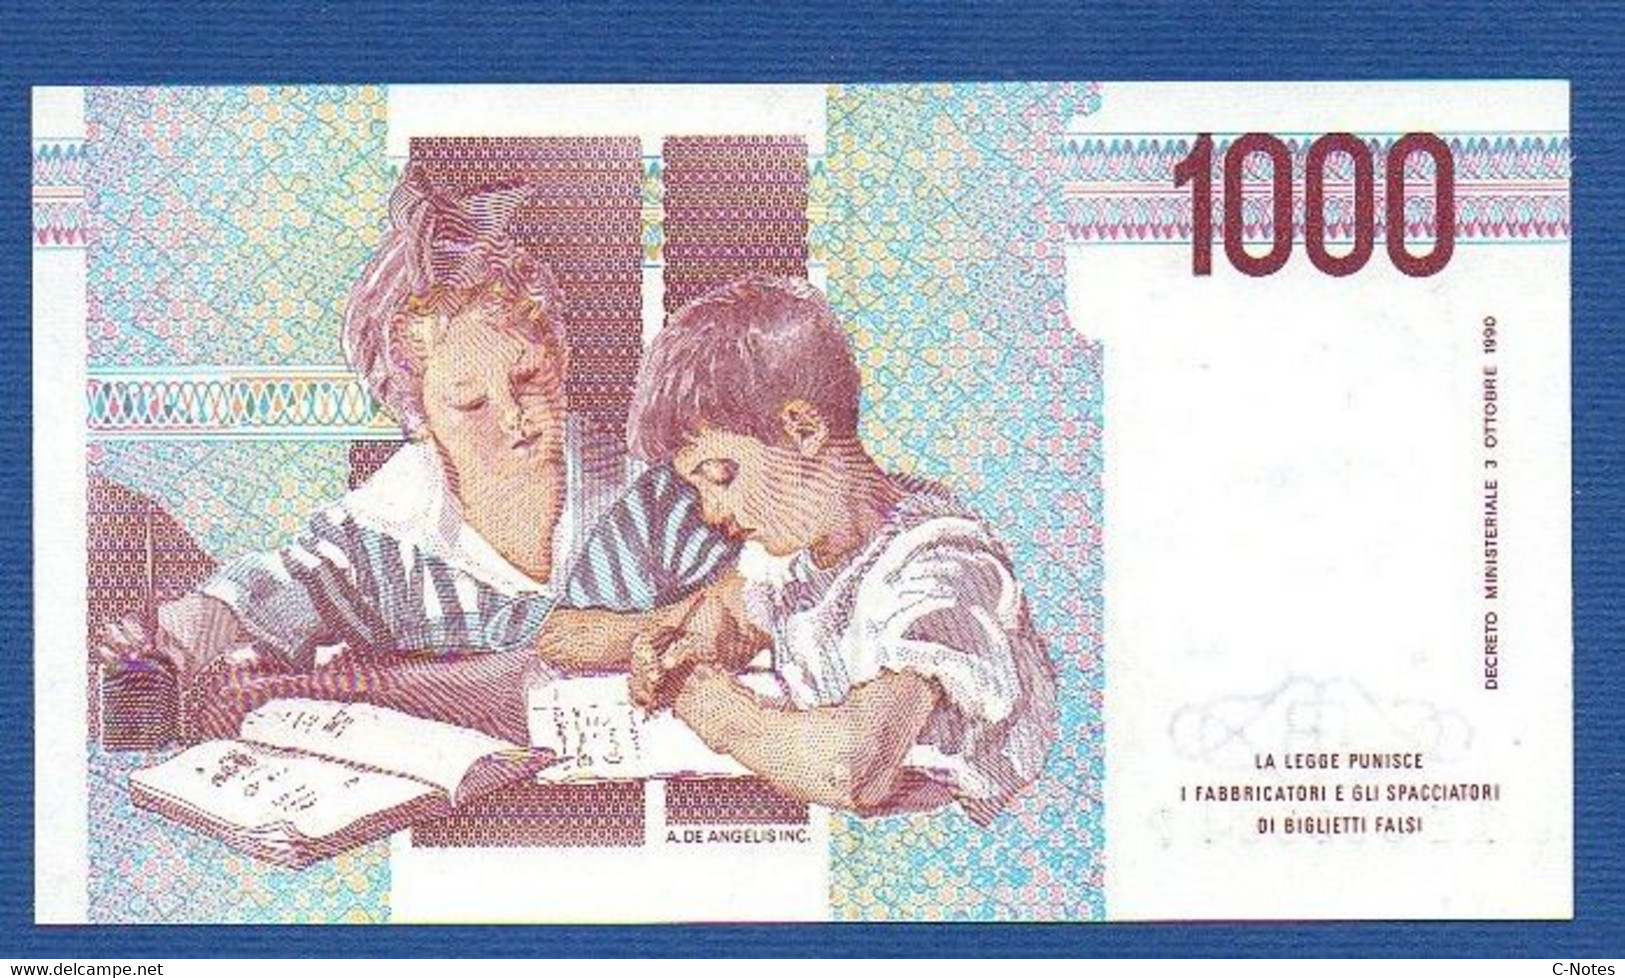 ITALY - P.114c – 1.000 LIRE M. Montessori 03.10.1990  UNC, Serie NG 543896 A - 1000 Lire